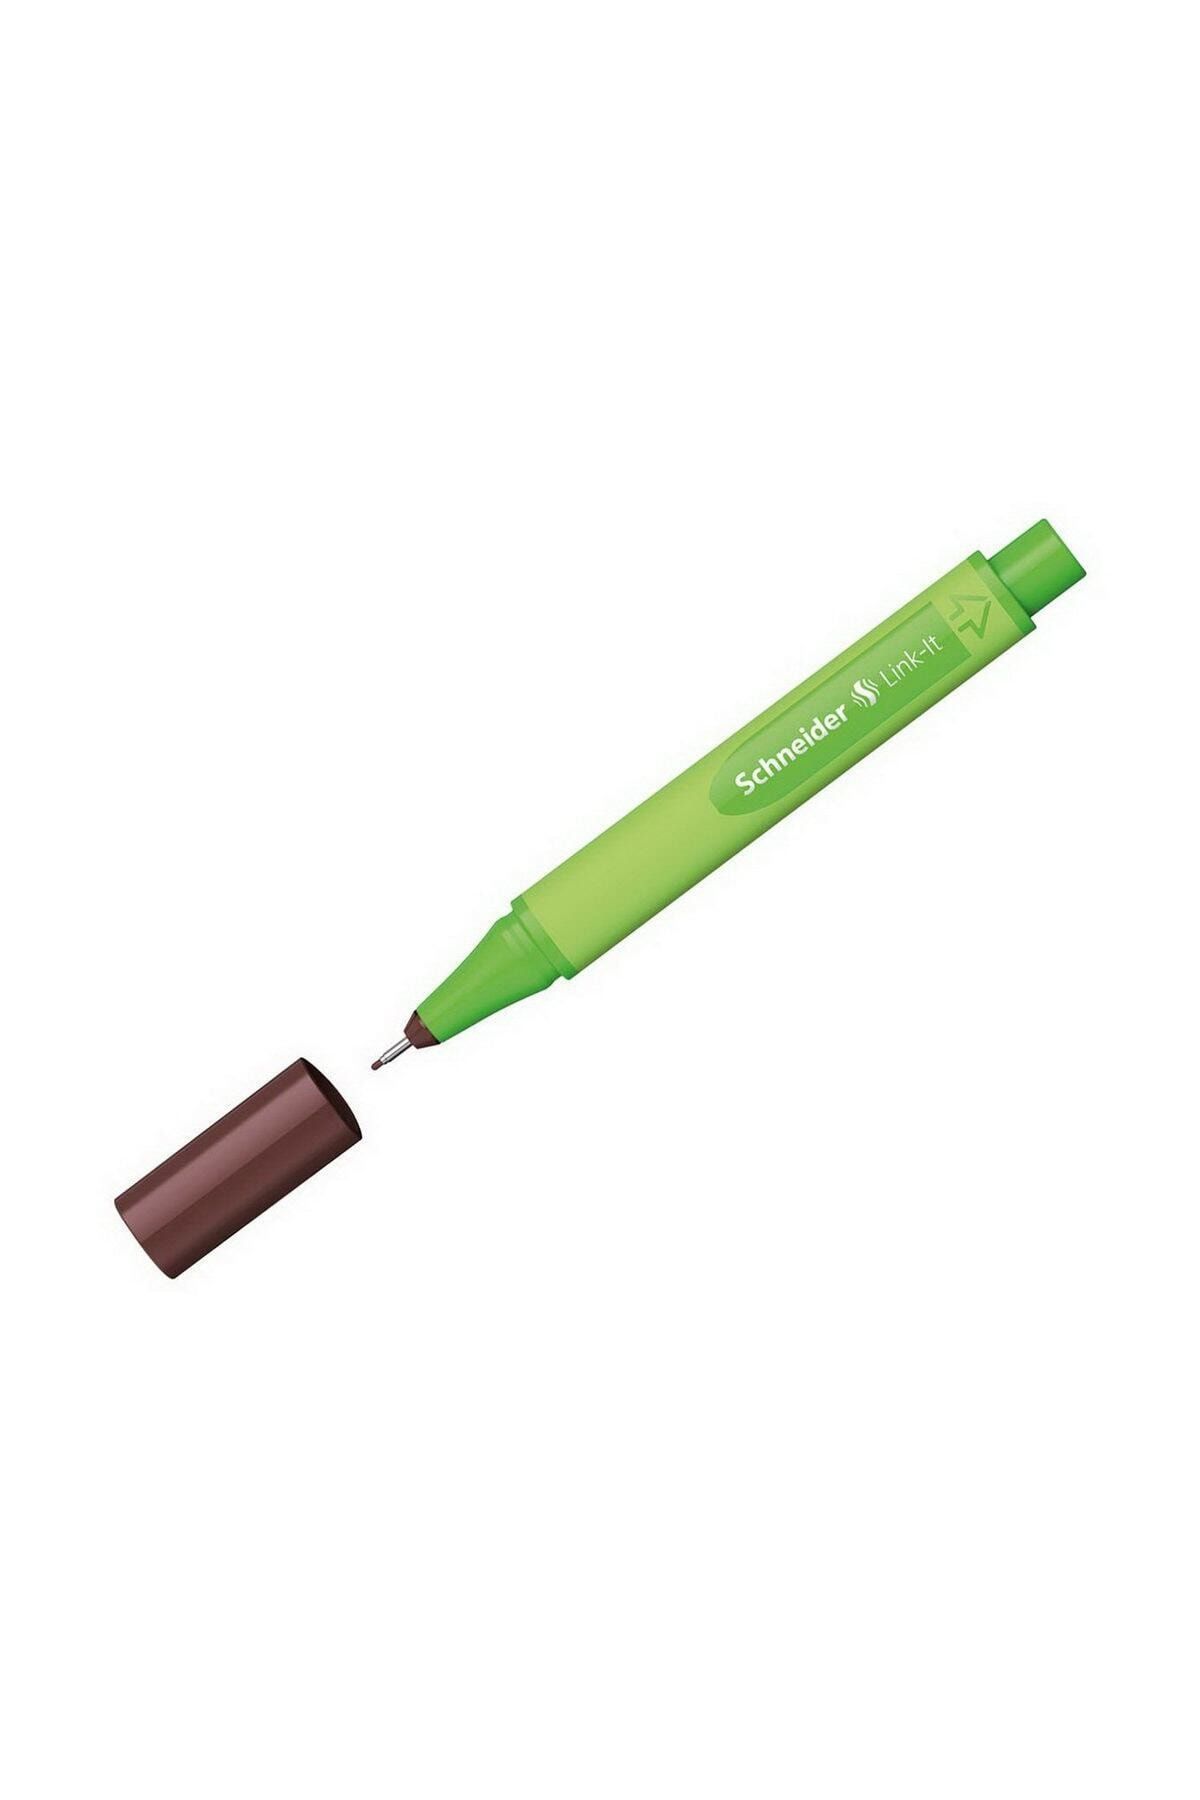 Schneider Link-It 0.4 mm İnce Uçlu Keçe Kalem